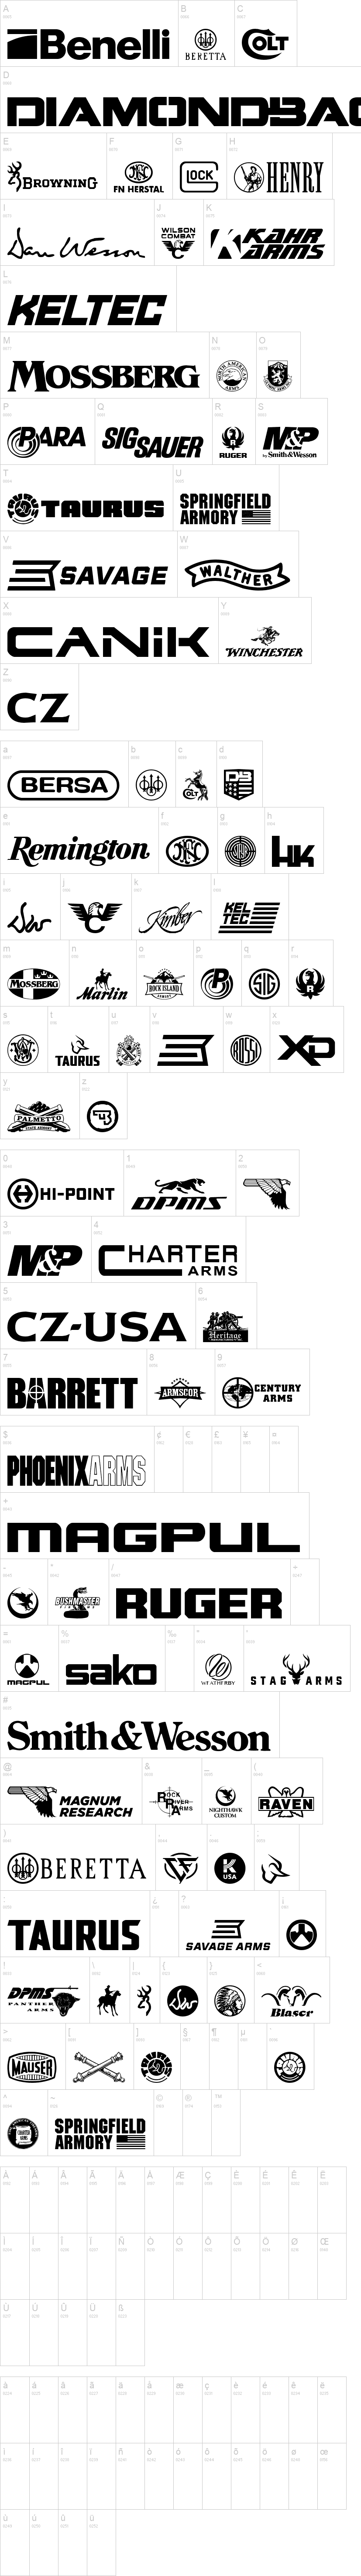 2nd Amendment Brands